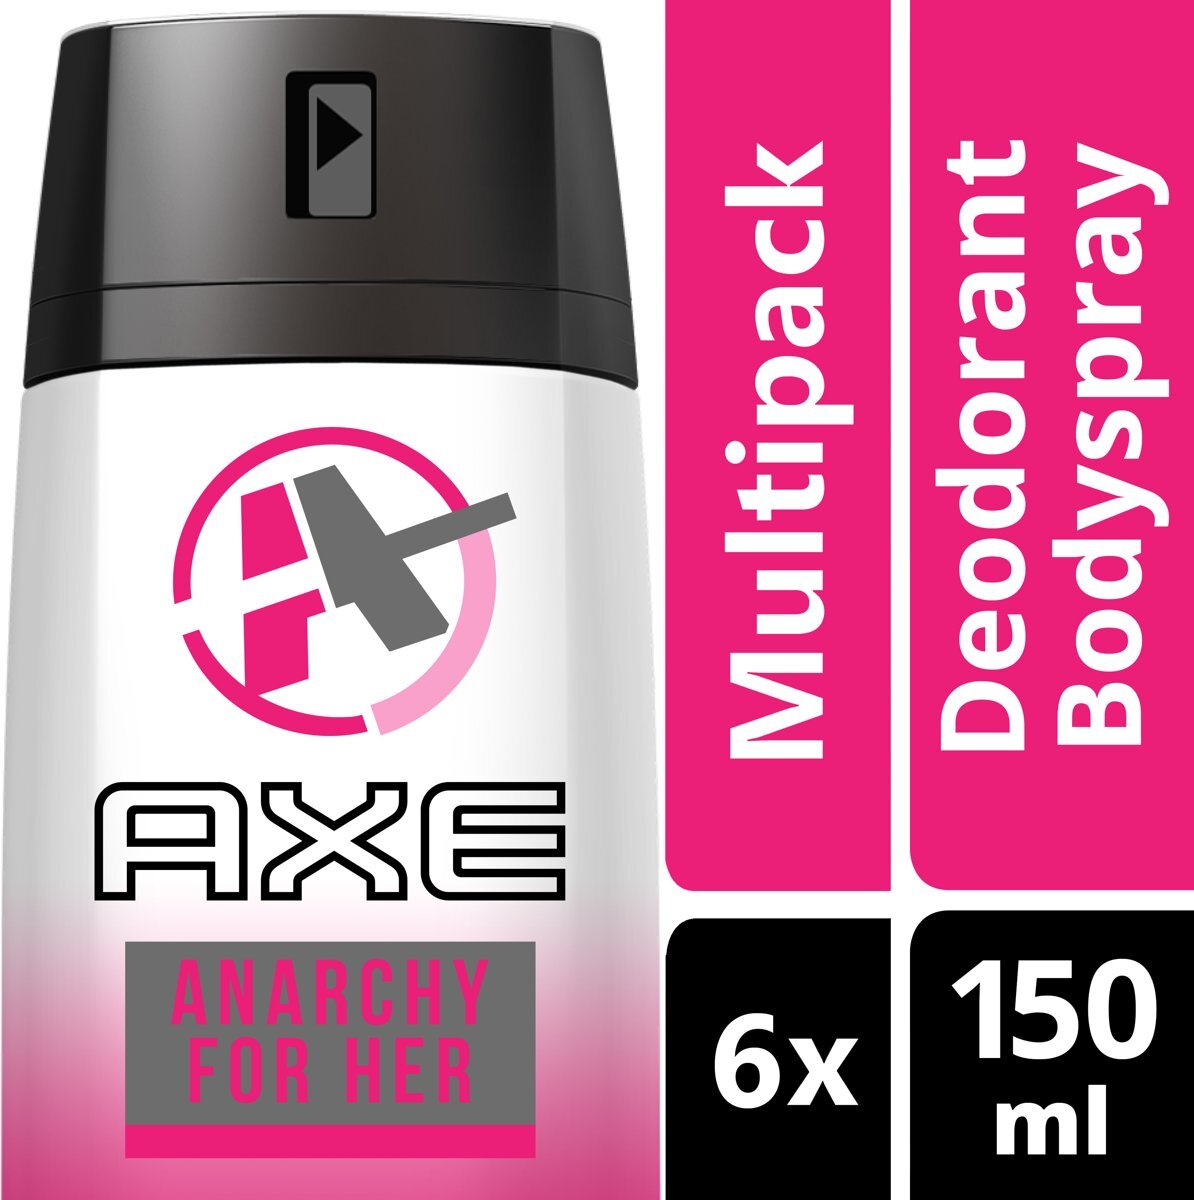 AXE Anarchy For Women - 150 ml - Deodorant Spray - 6 stuks - Voordeelverpakking